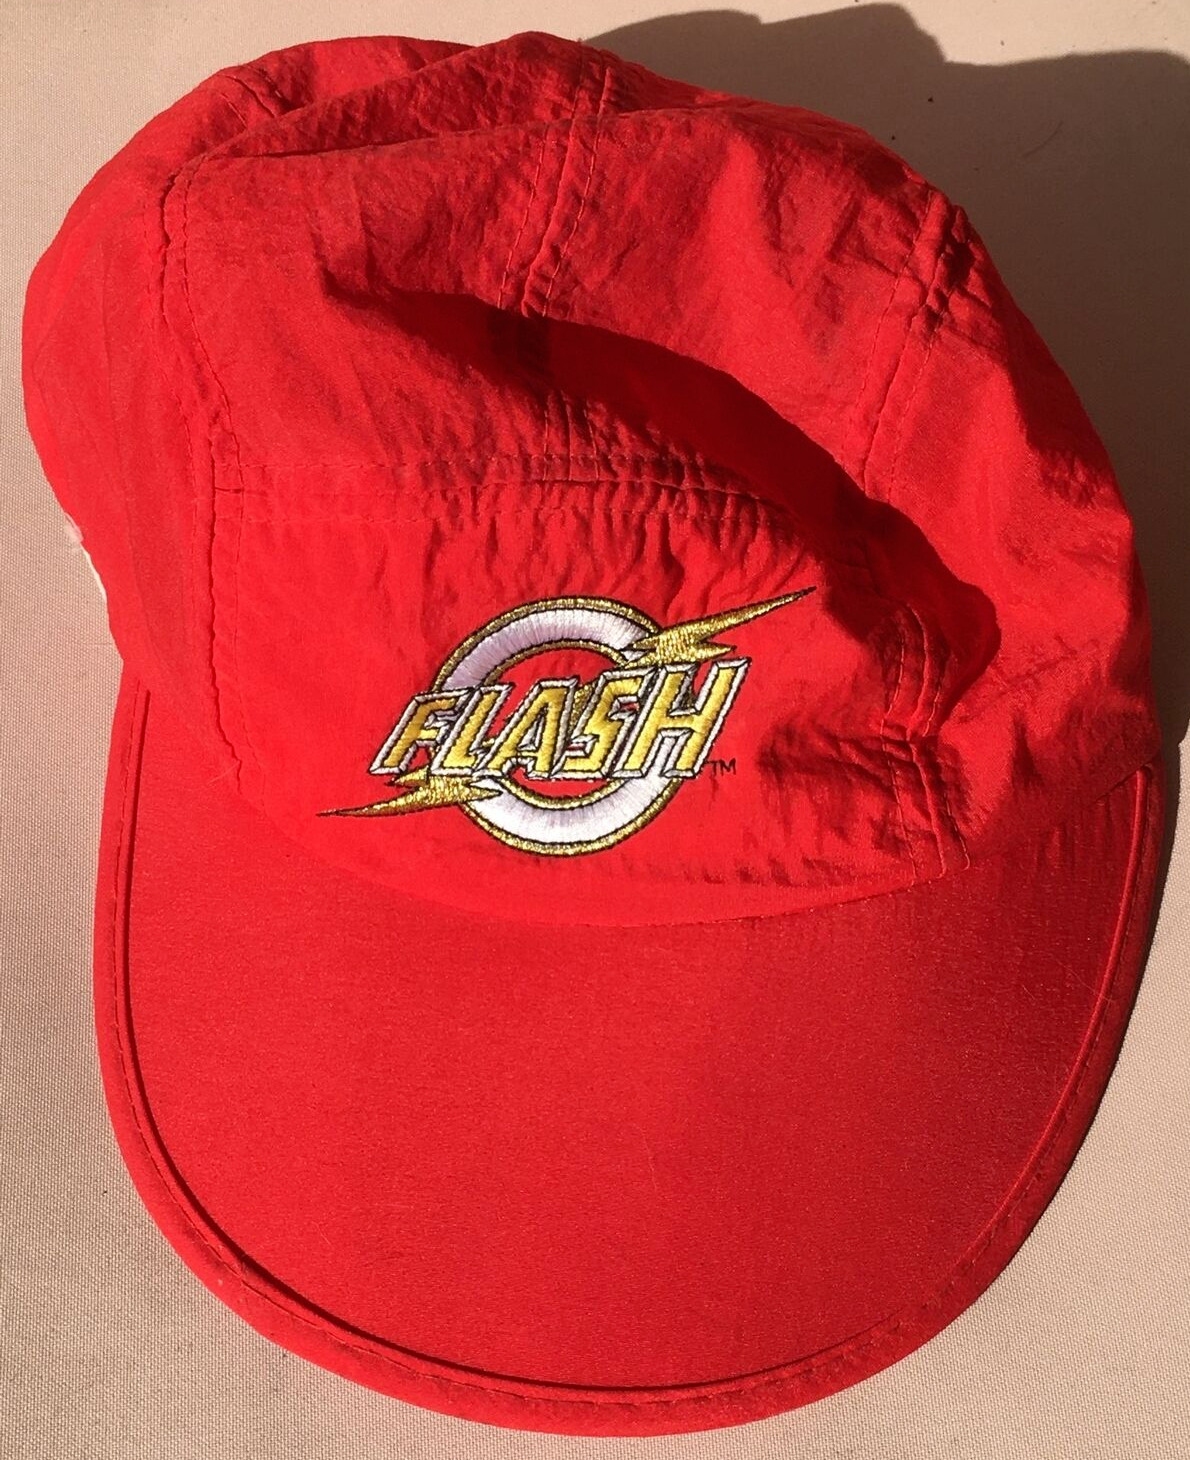 Vtg DC Comics Flash Gordon Logo Strap Back Hat Cap Red WOW